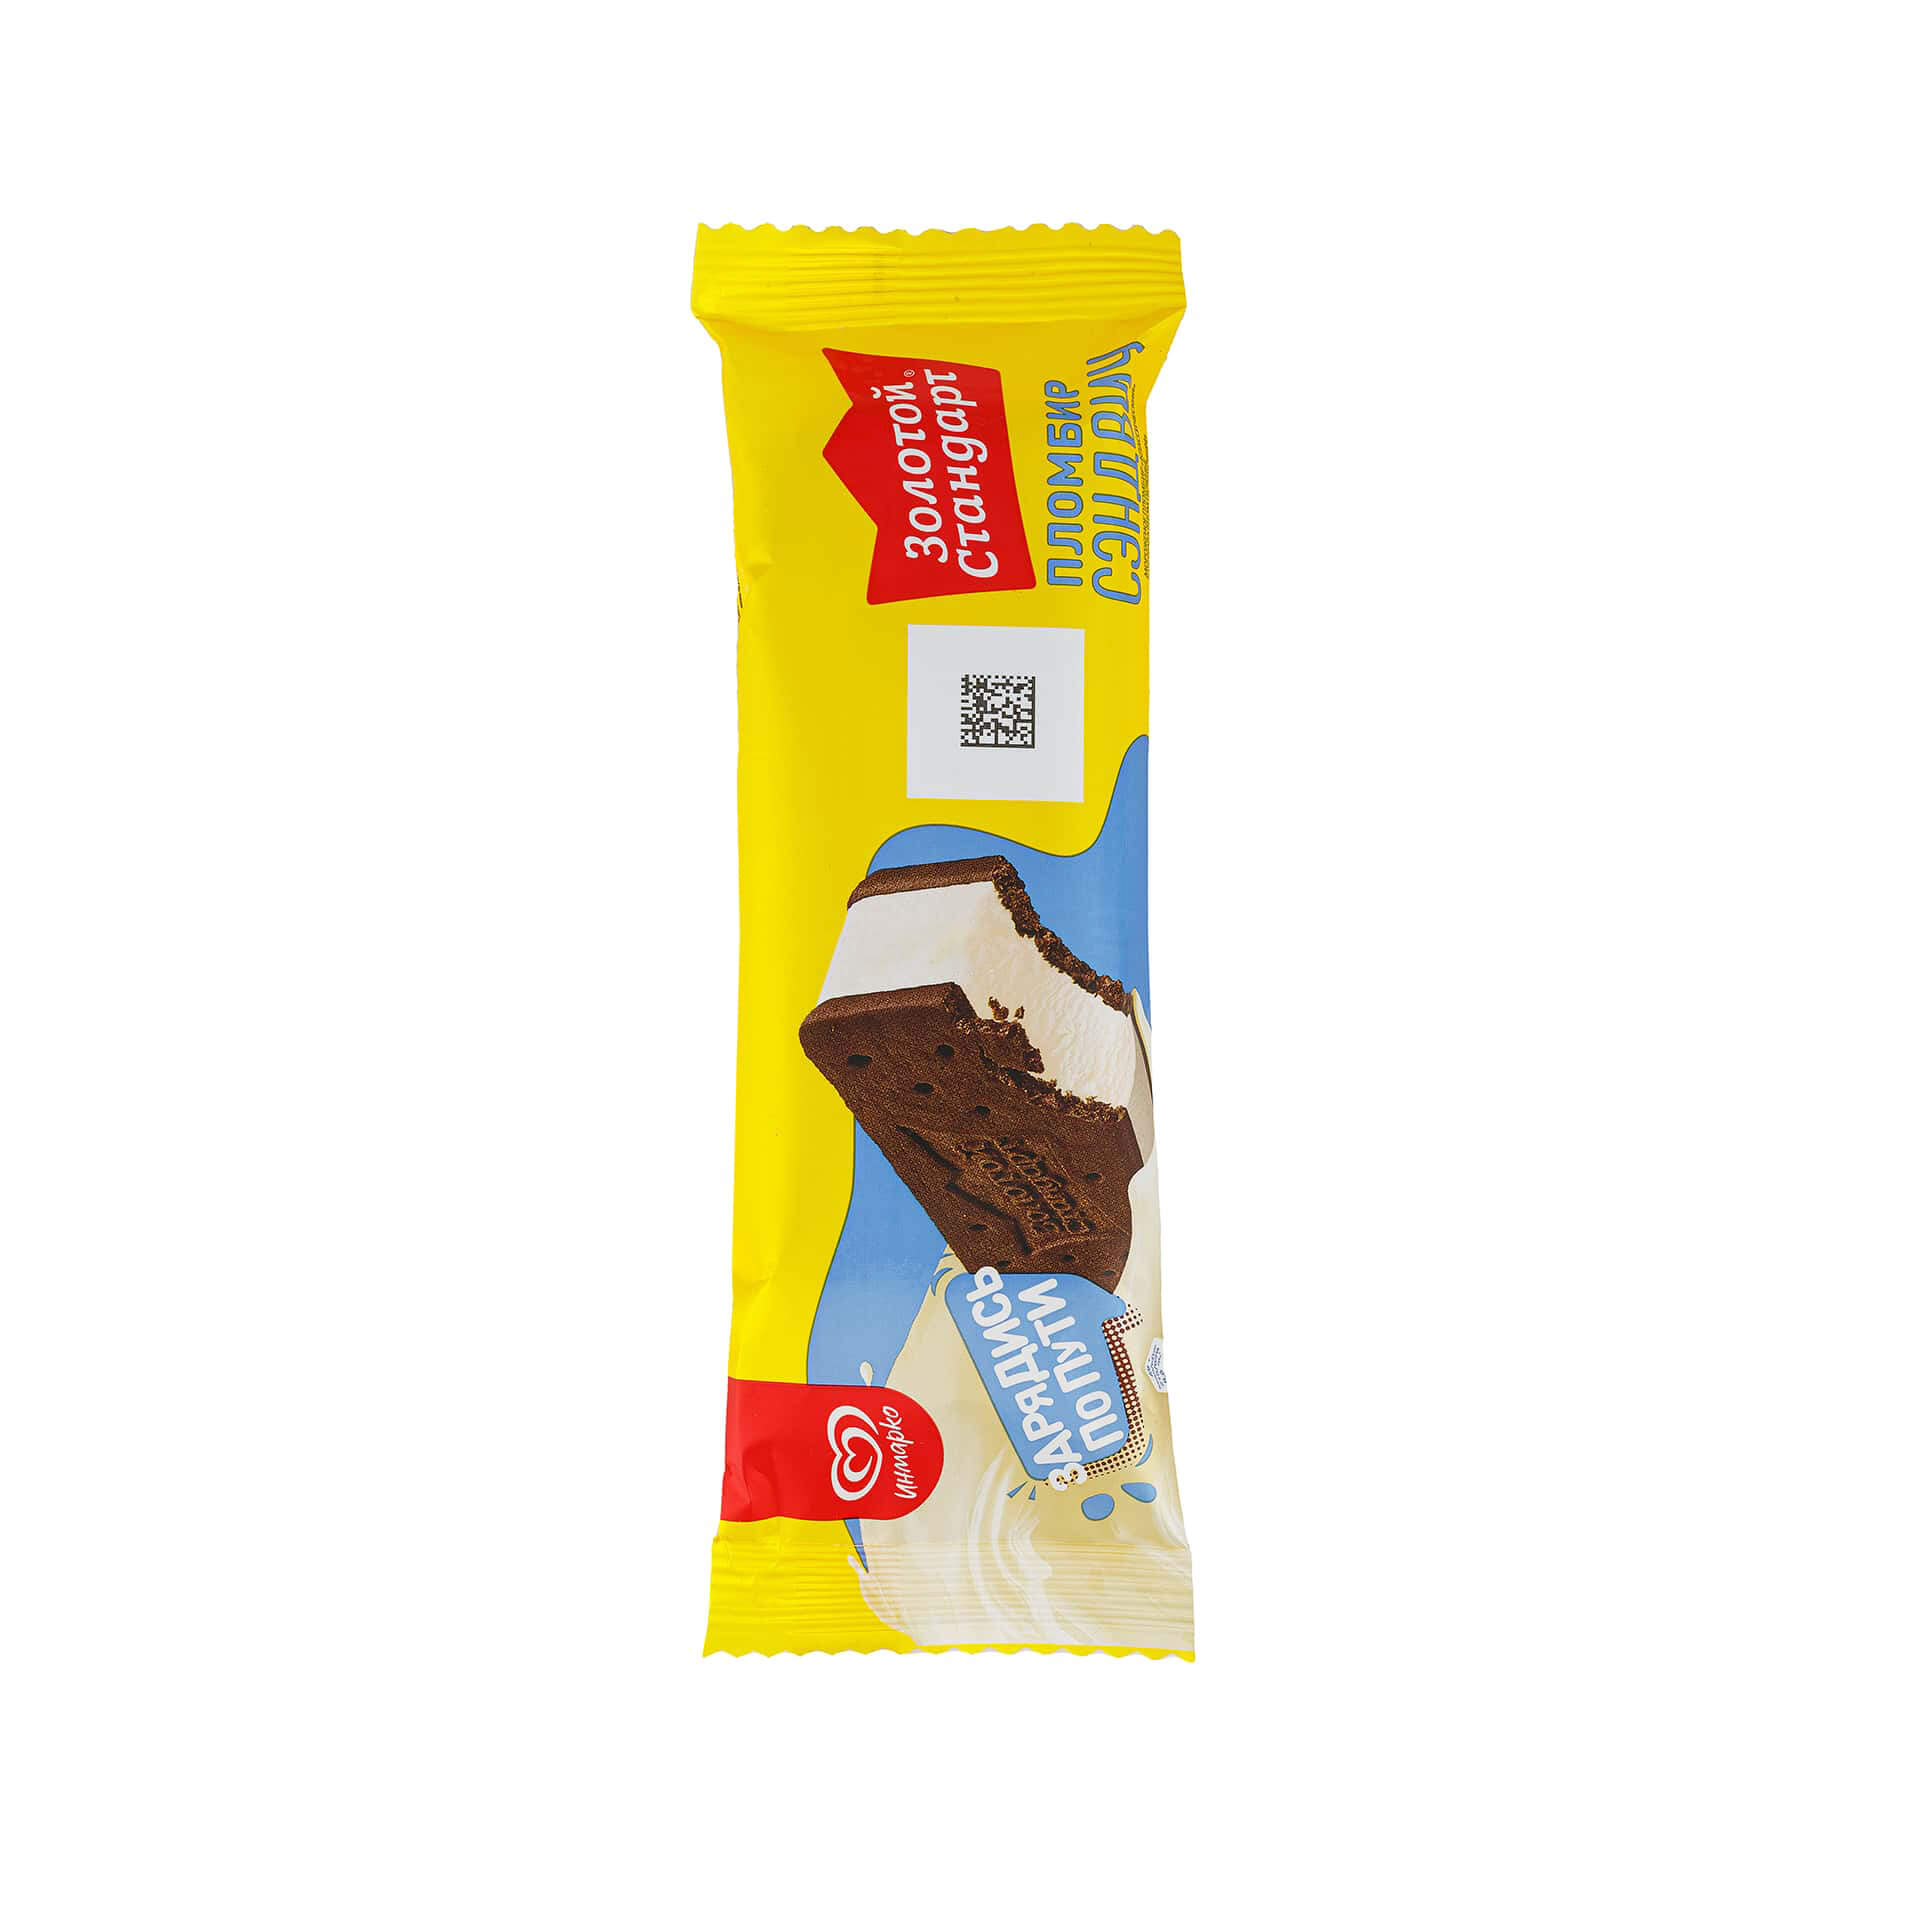 Мороженое пломбир в шоколадном печенье сэндвич Золотой стандарт Инмарко 69 г 1012LED, общий вид, купить оптом с доставкой по москве и московской области, недорого, низкая цена